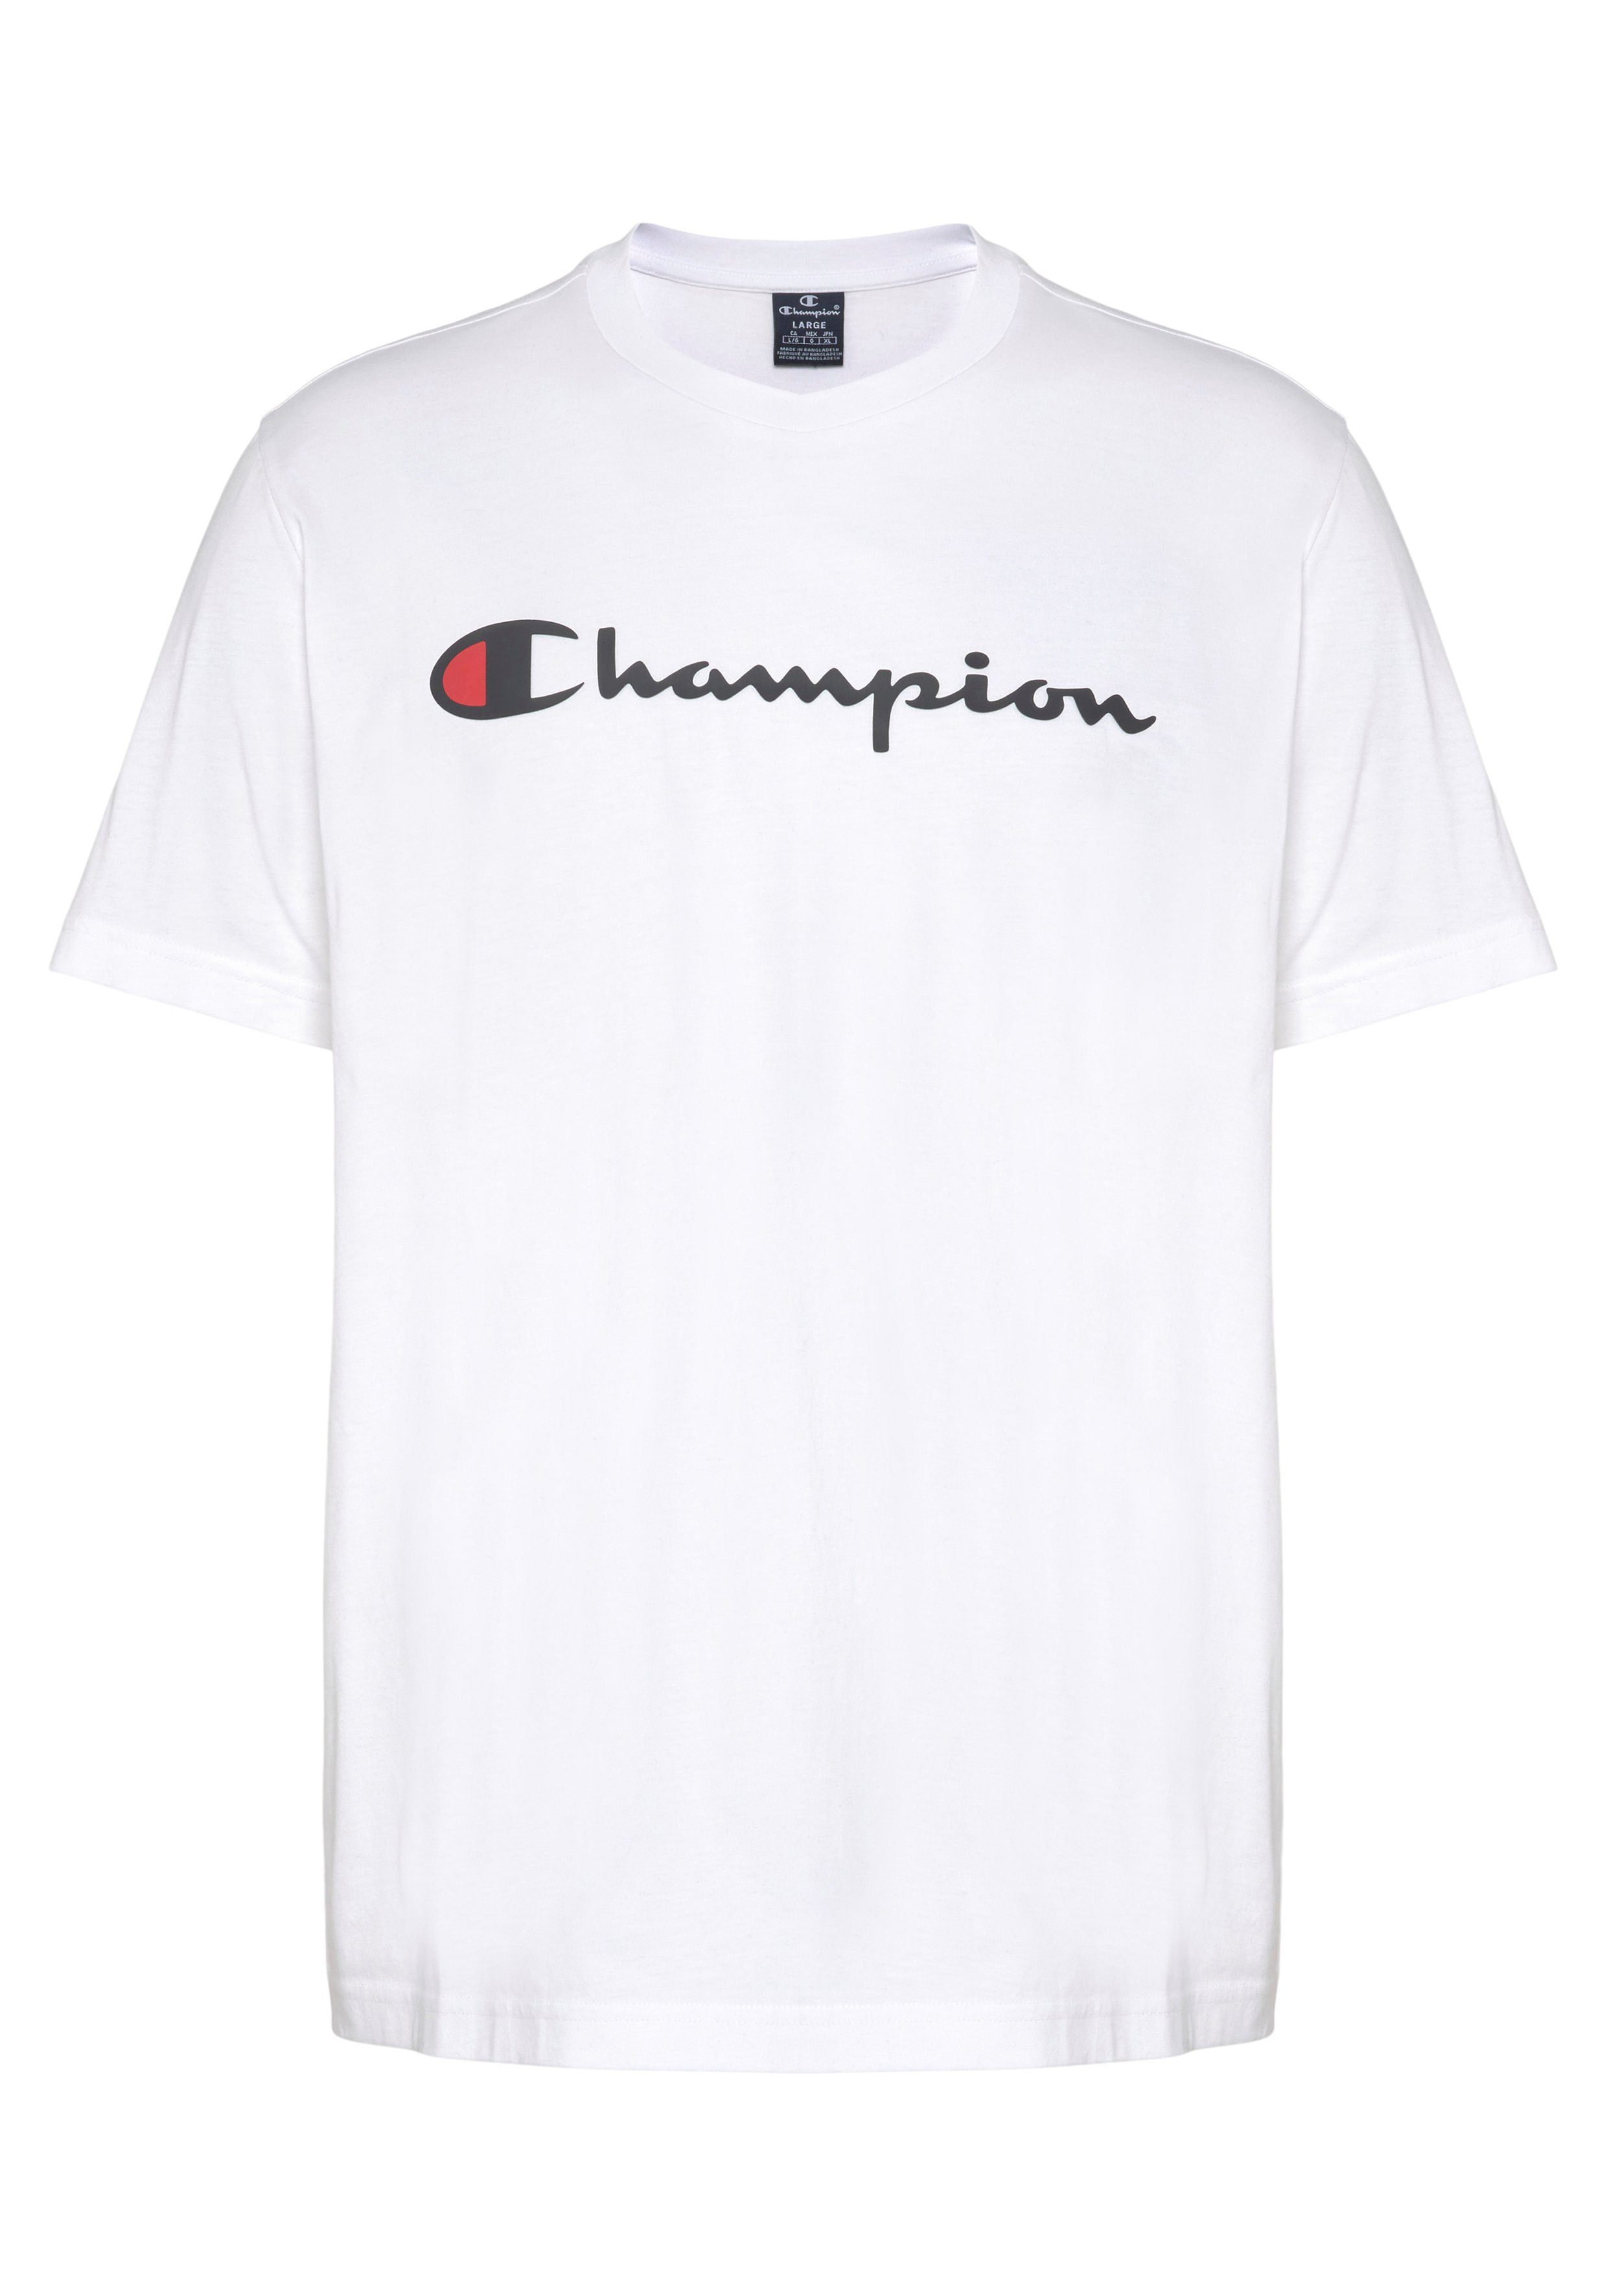 OTTO Champion | Herren T-Shirts online kaufen für